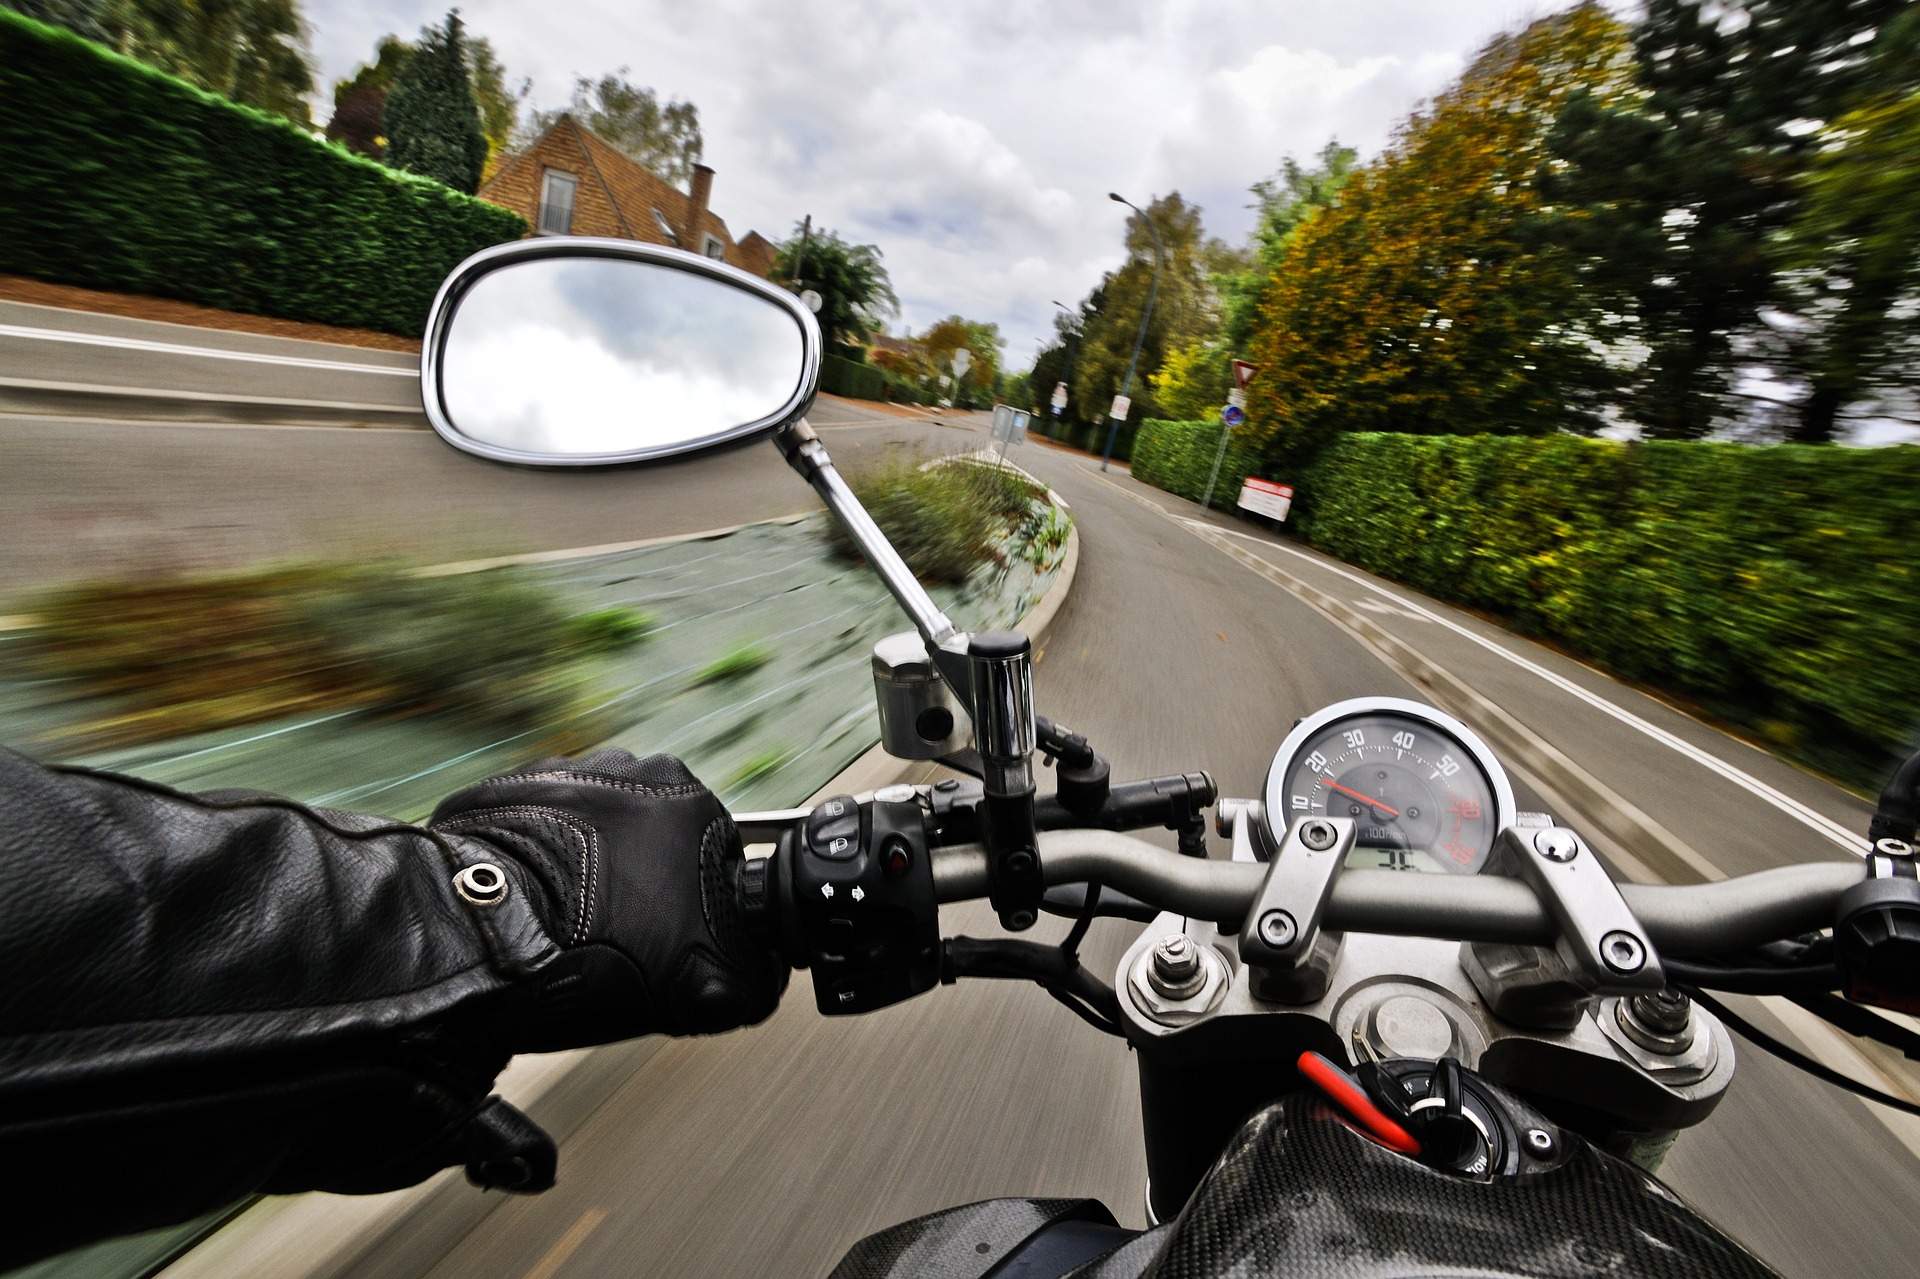 Malos hábitos que todo motociclista debe evitar 